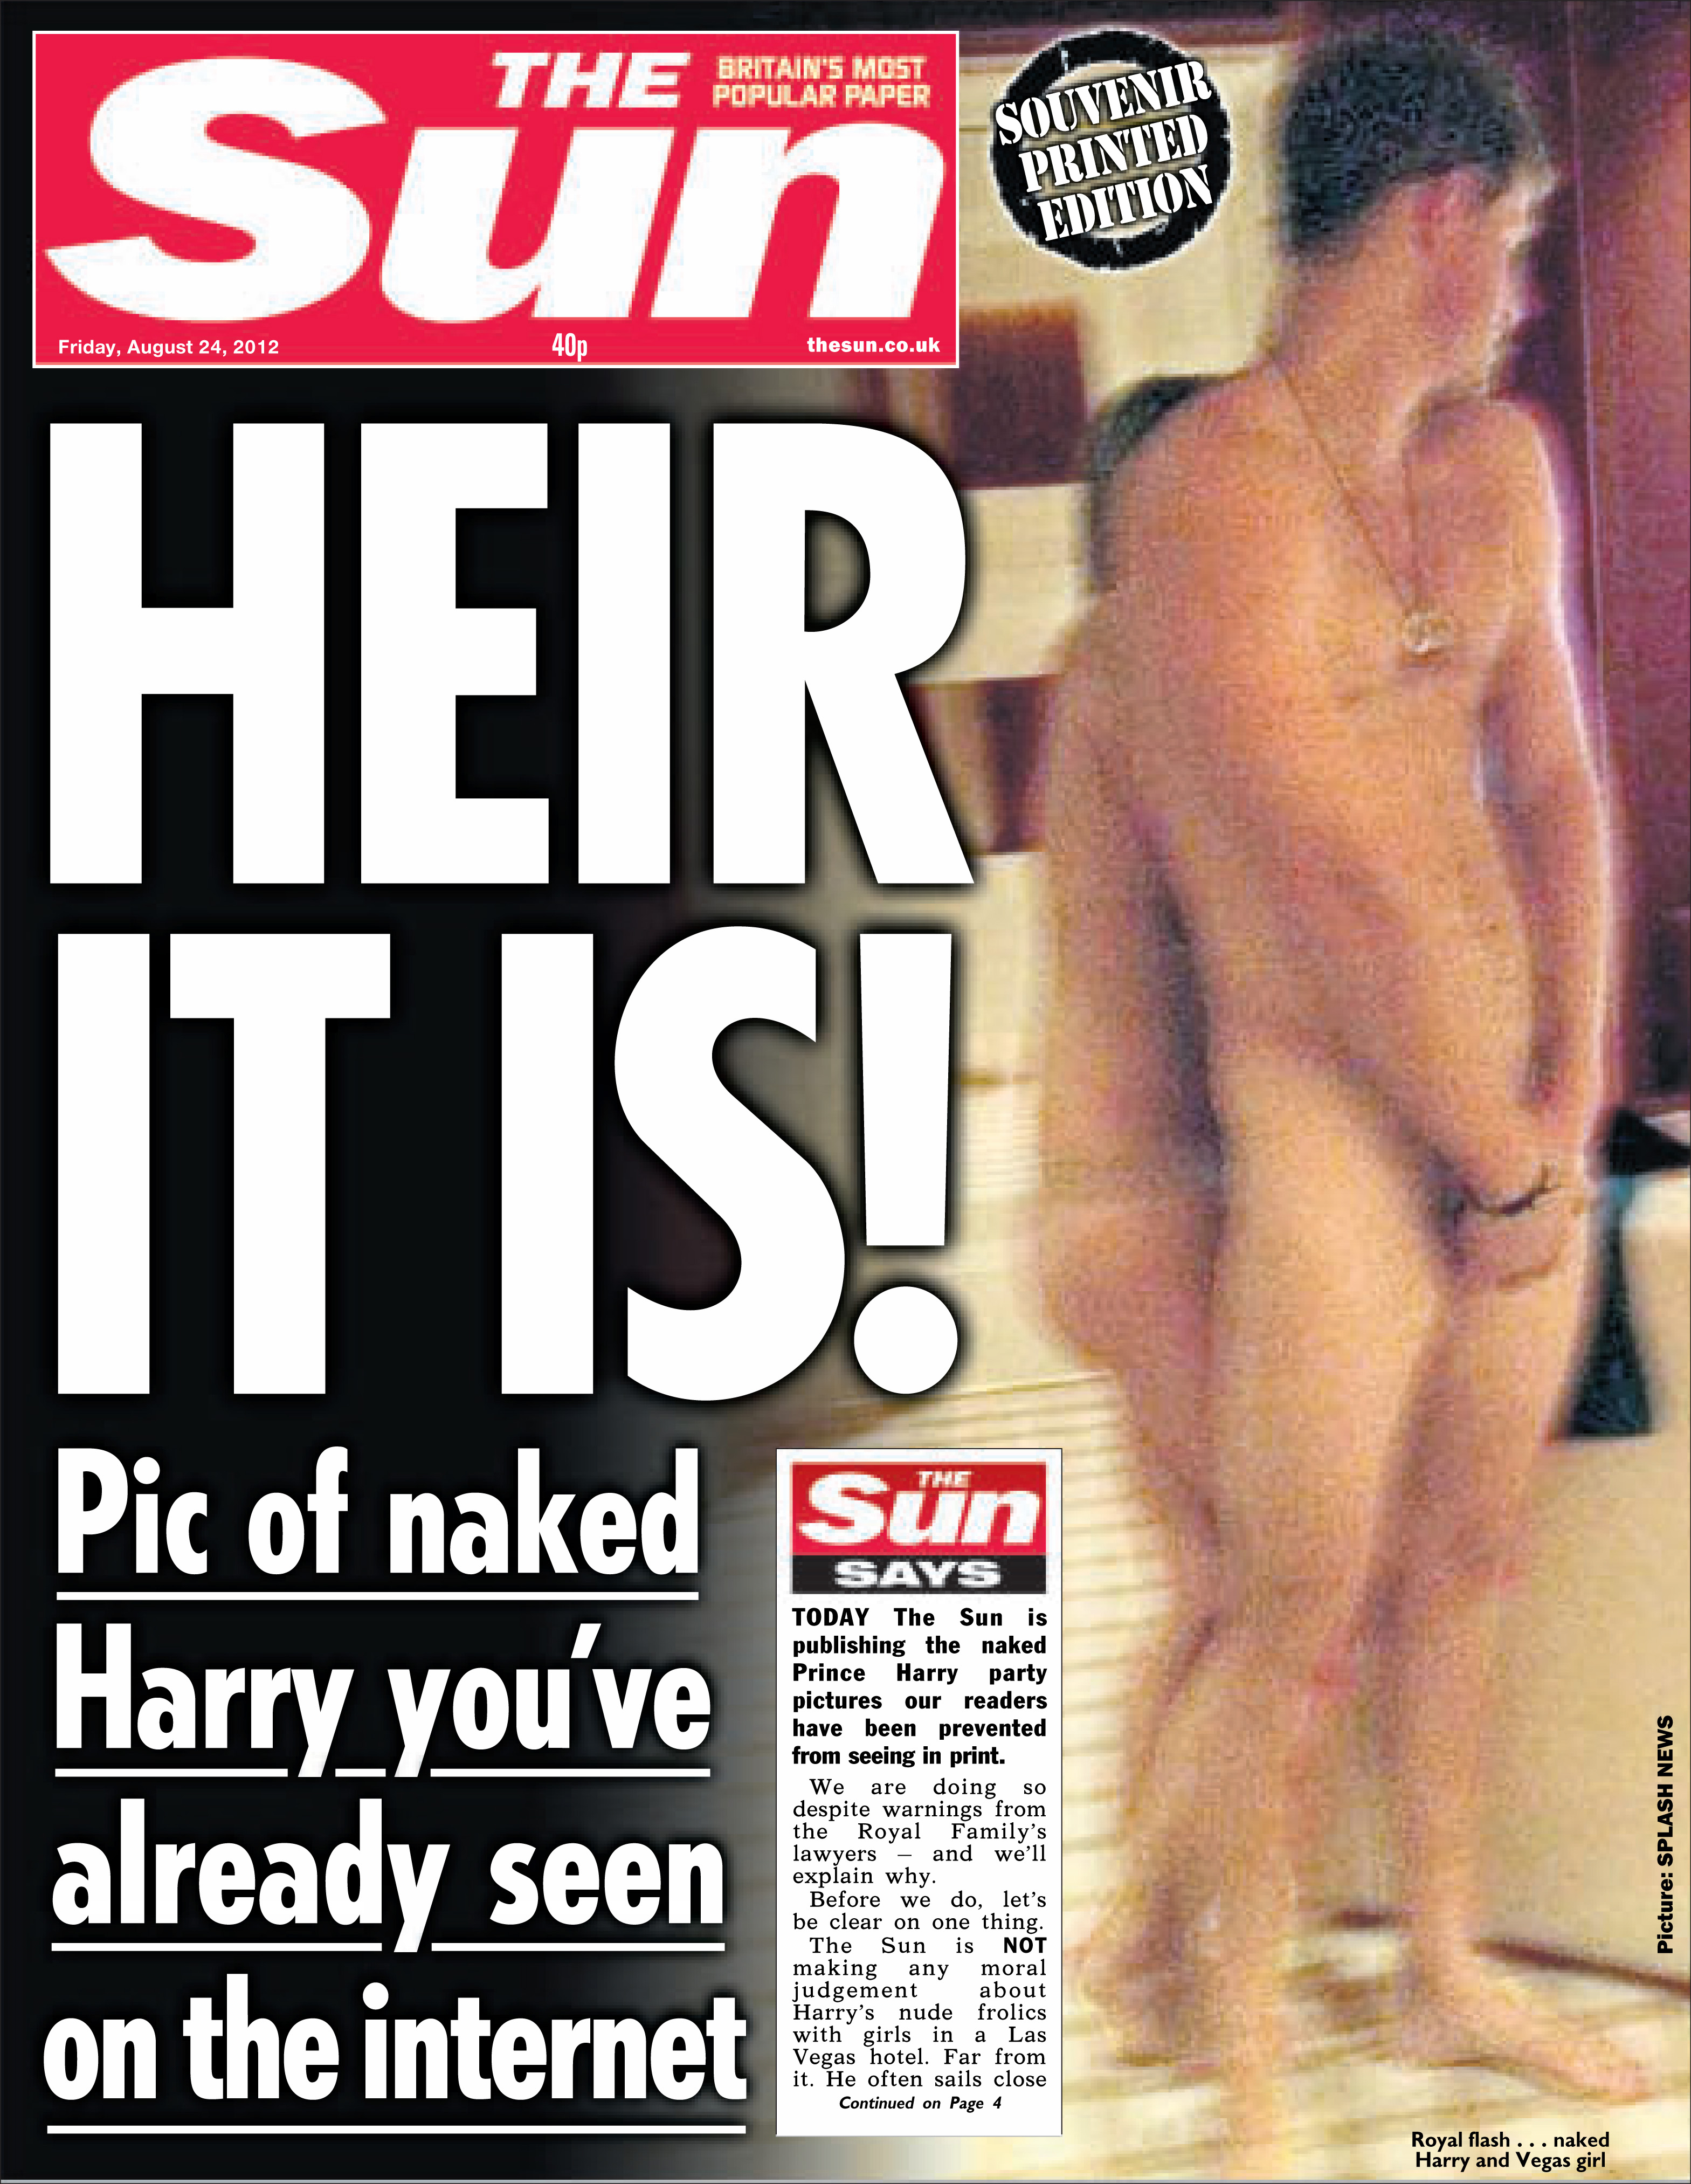 Fotos von einem nackten Harry, der von einer spärlich bekleideten Frau umarmt wird, wurden 2012 in The Sun veröffentlicht